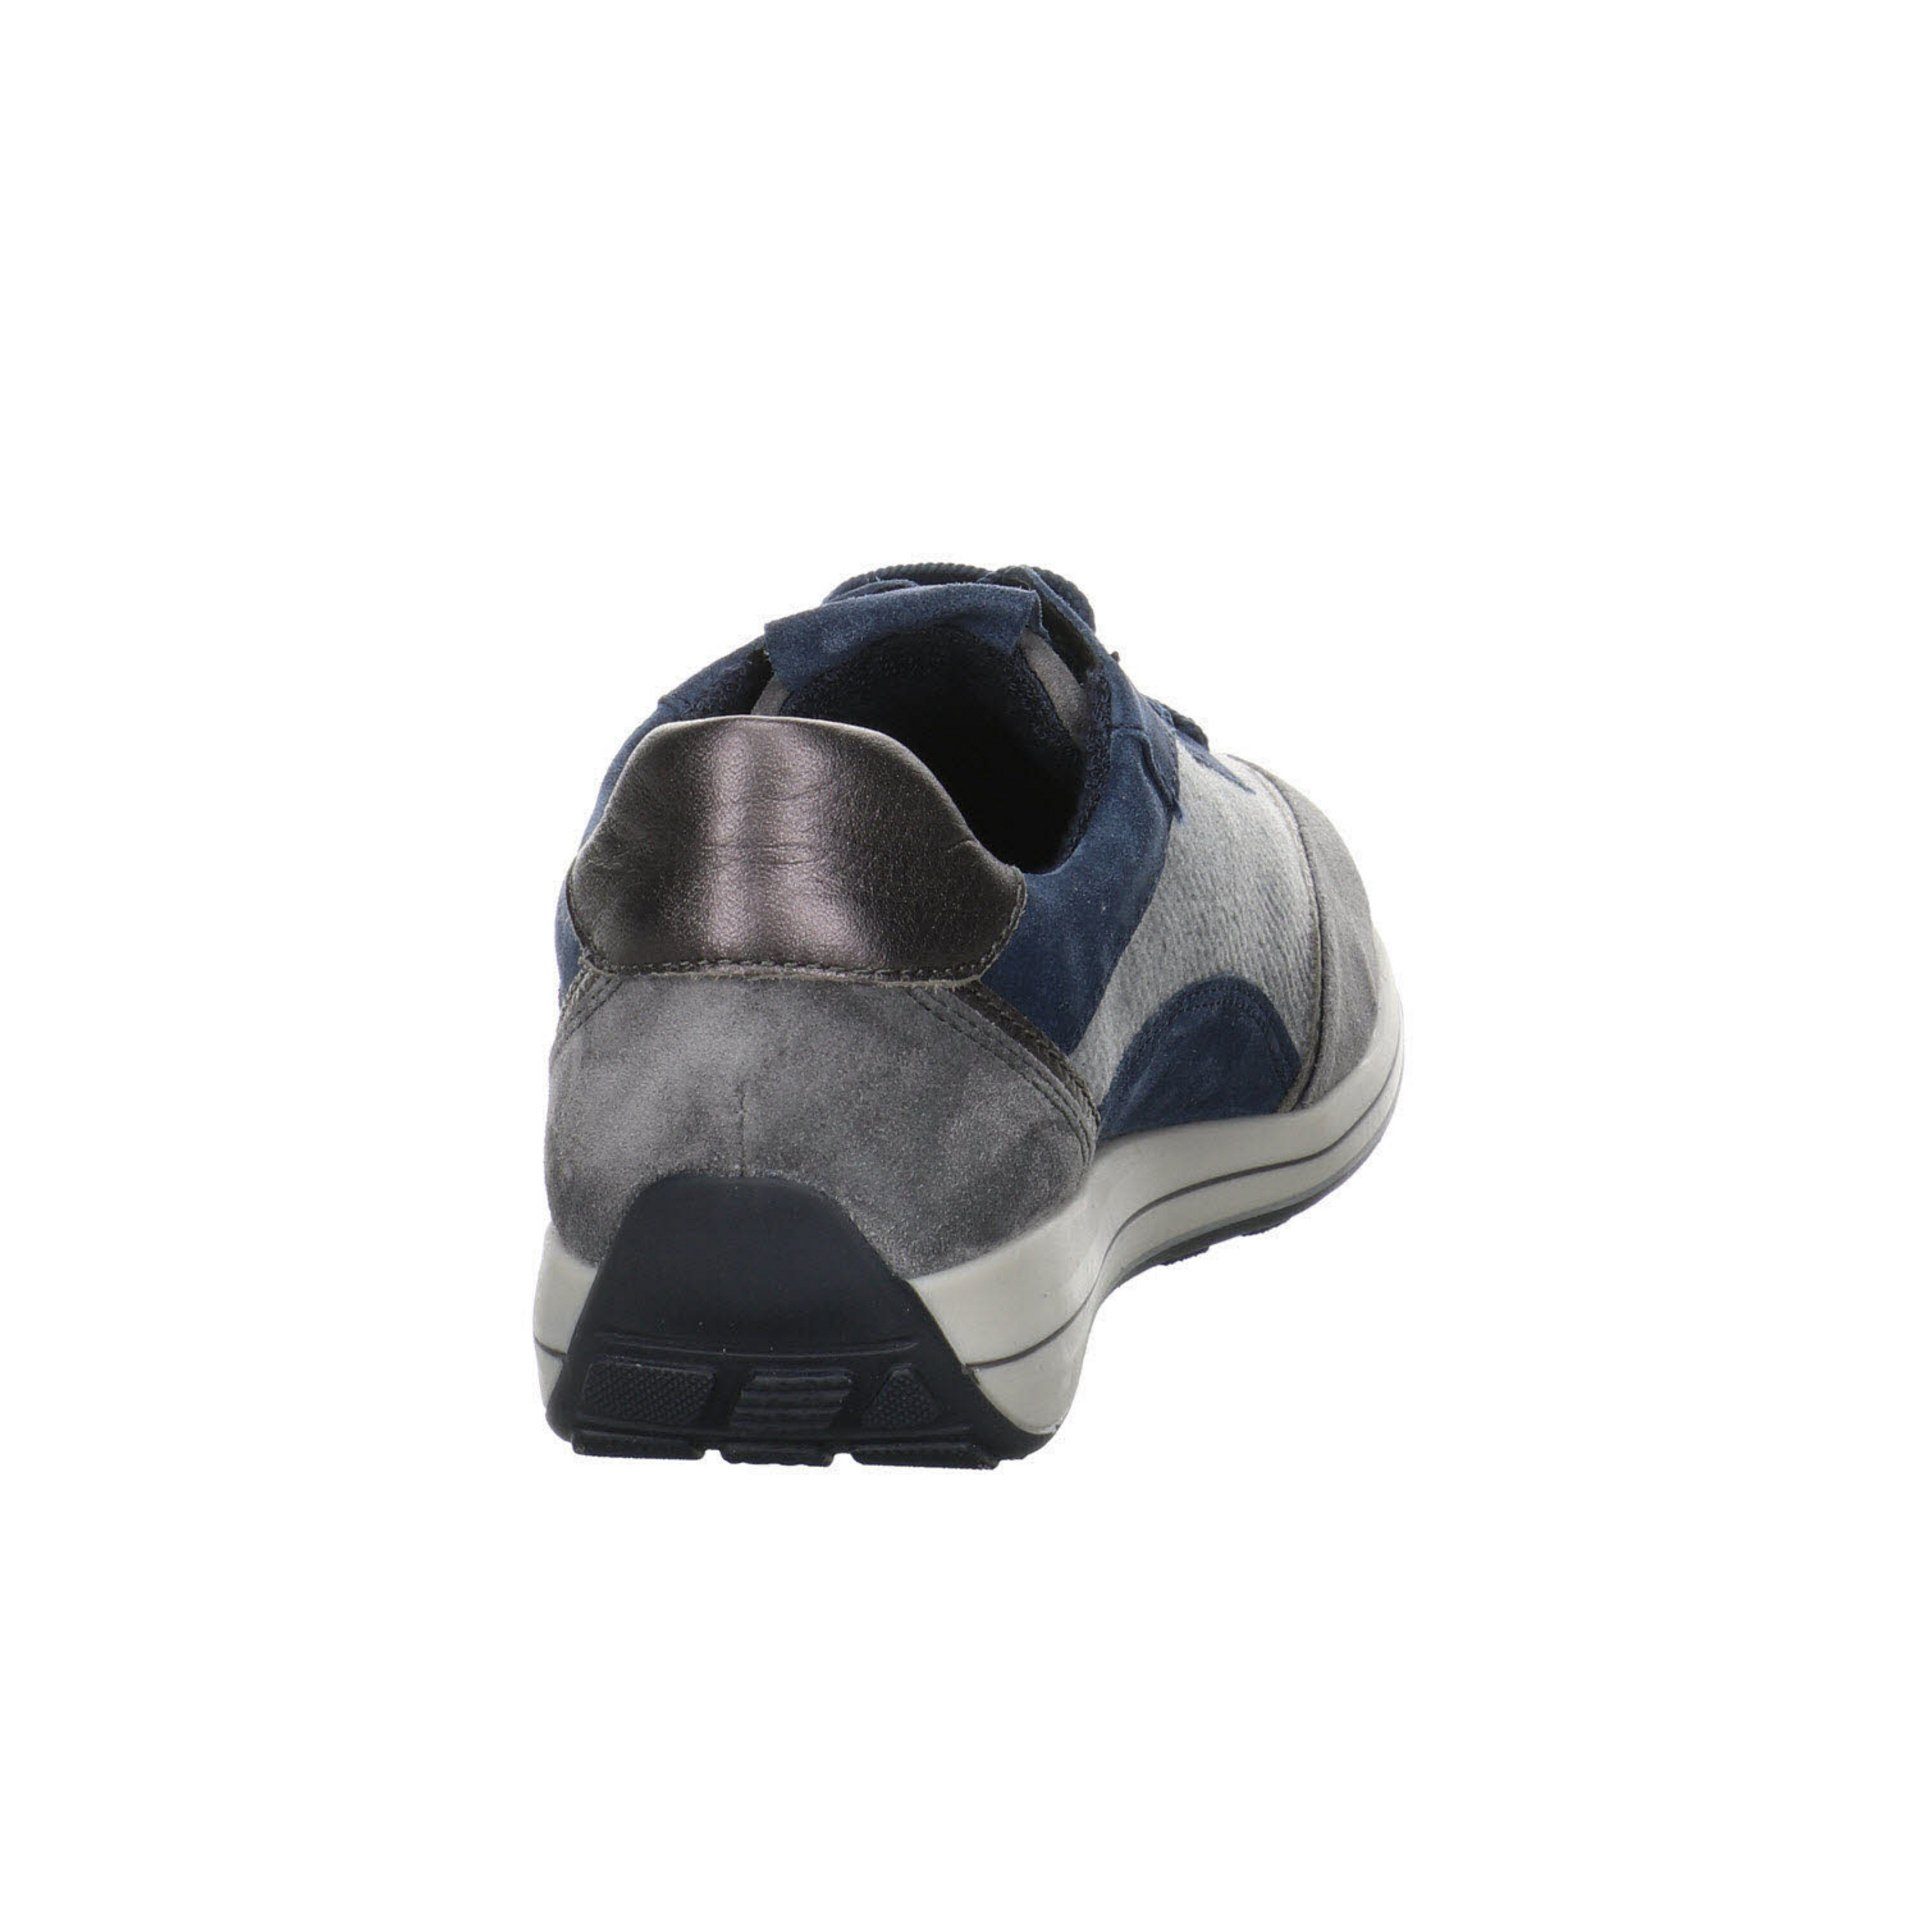 Ara Damen Sneaker Sneaker Osaka Schuhe Leder-/Textilkombination Sneaker Highsoft GRAPHIT/ANTHRAZIT,GR